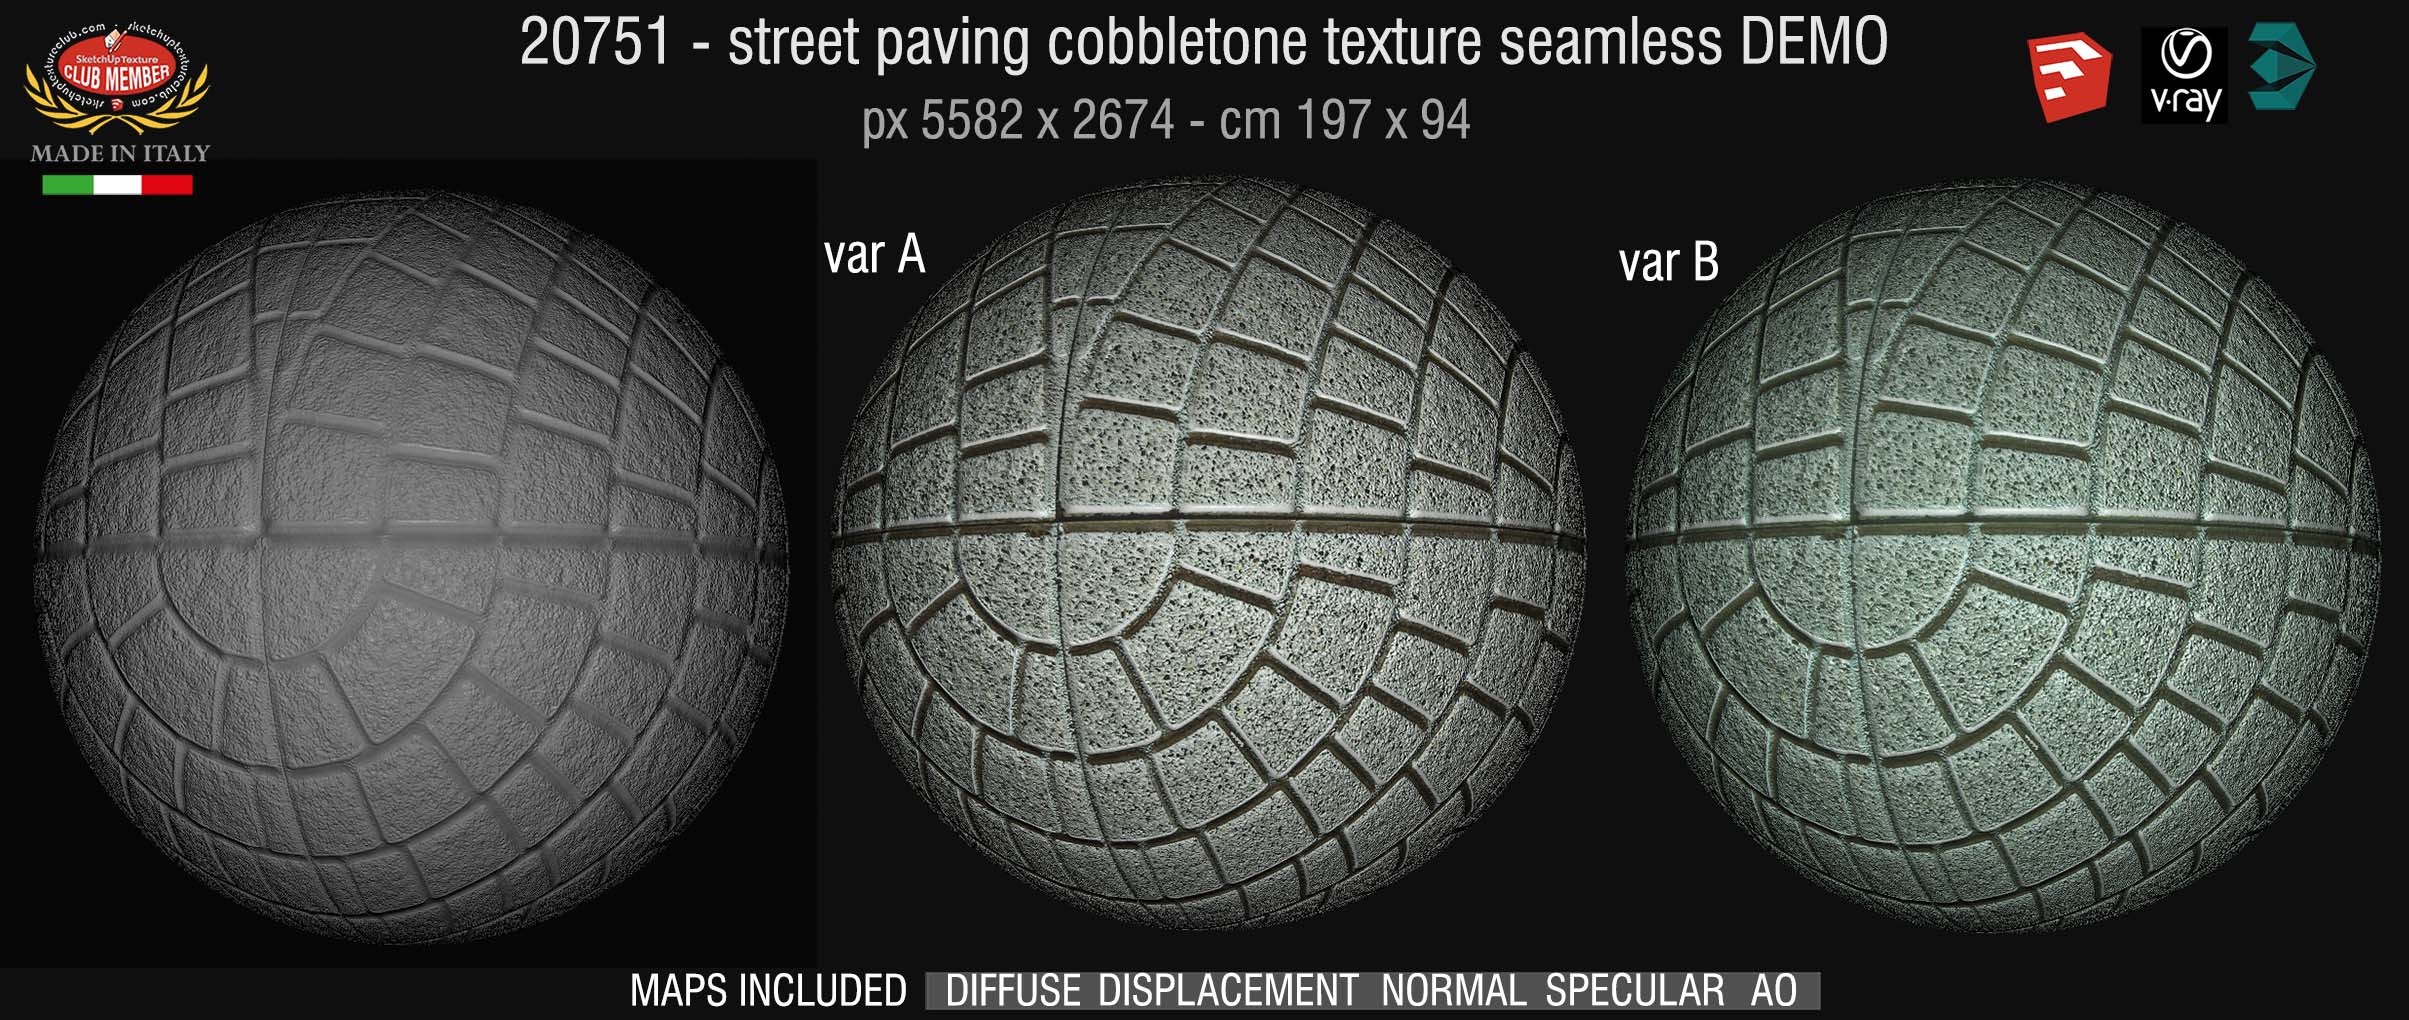 20751 HR Concrete paving outdoor texture & maps DEMO